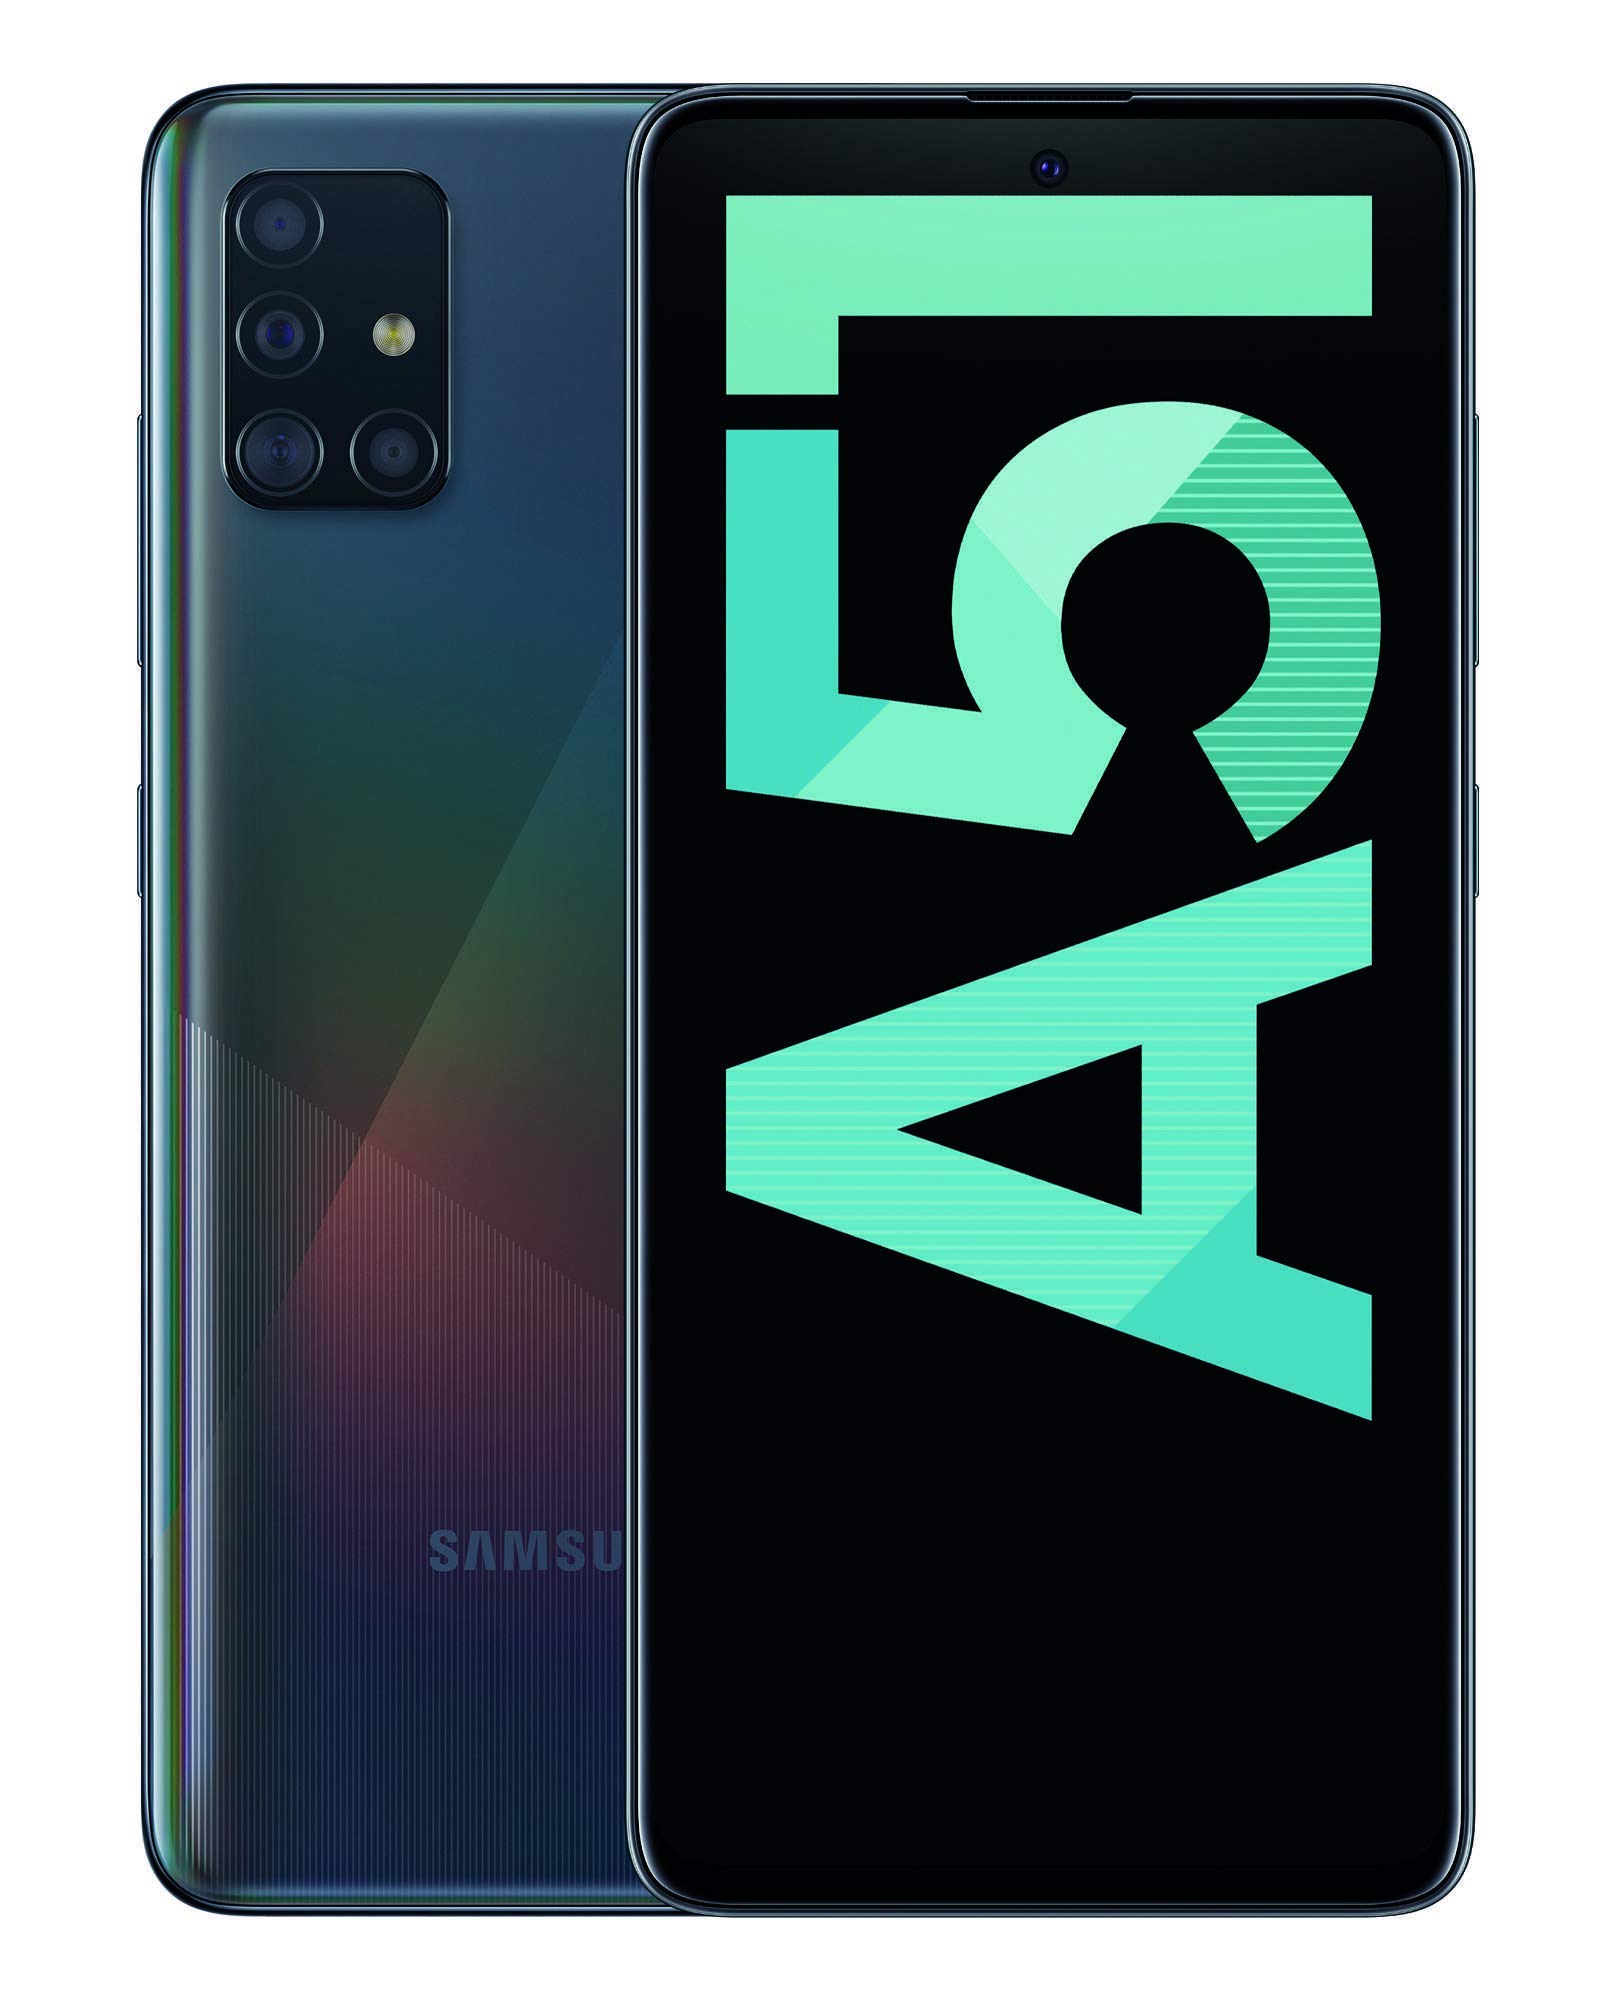 Samsung Galaxy A51 (2020 A515F) 128GB black LTE  DS Software-Branding ohne SIM Lock hervorragend